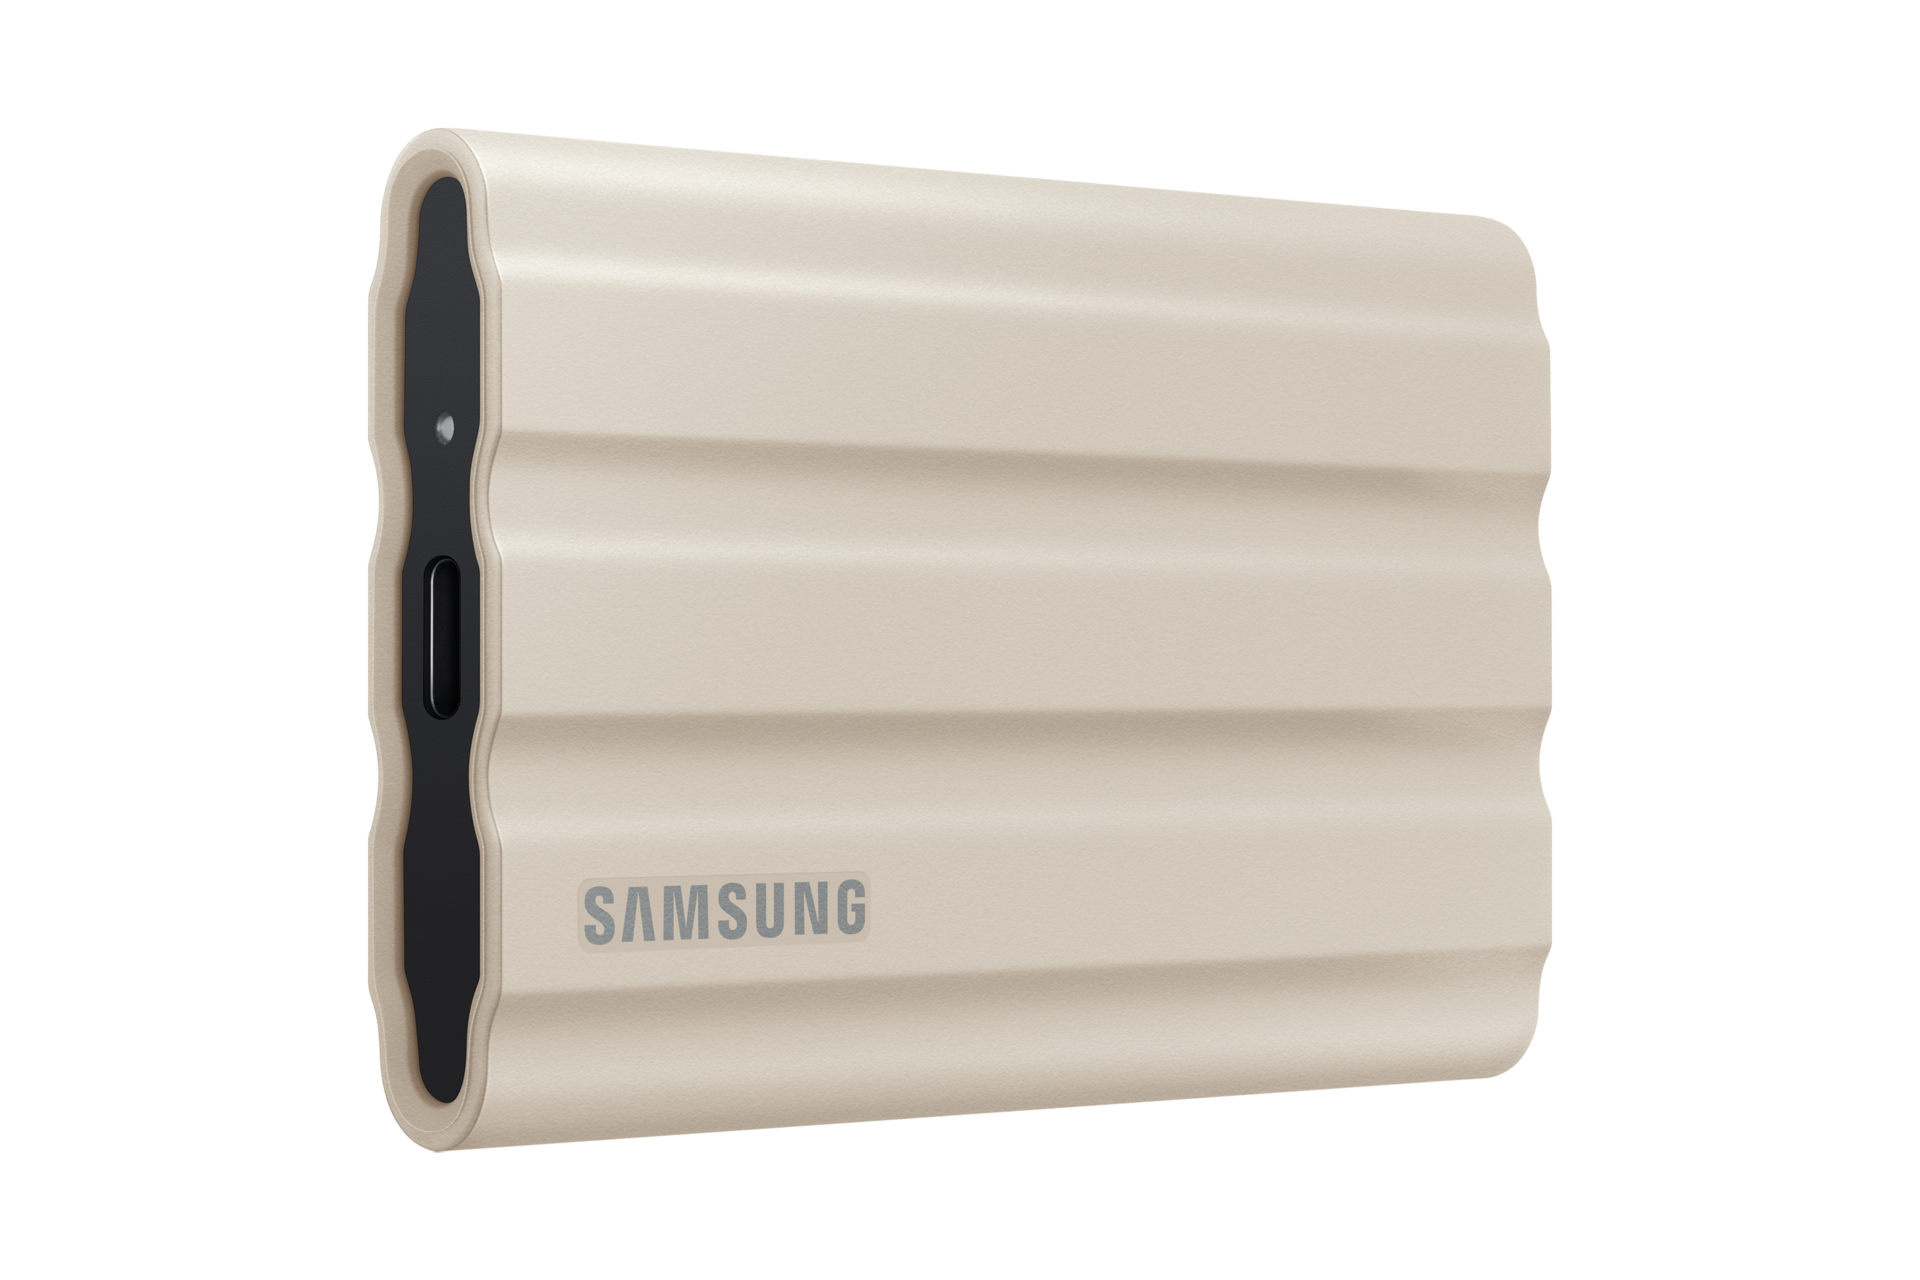 SAMSUNG SSD Externe T7 Shield : Le SSD résistant à toute épreuve